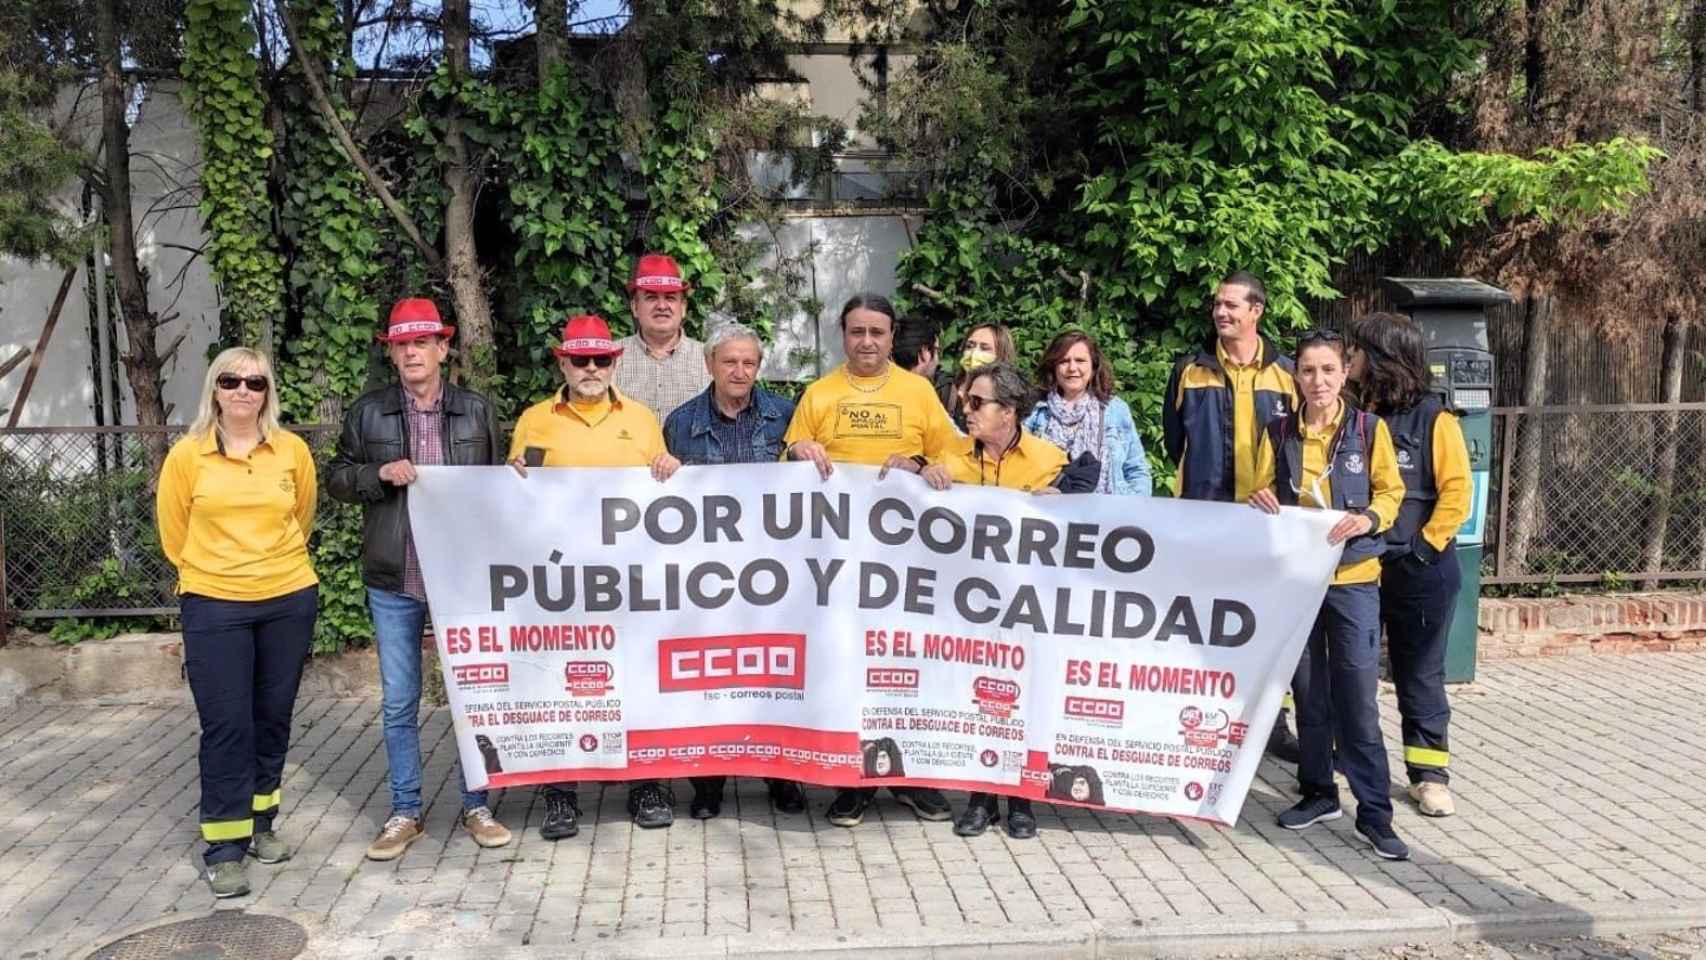 Anulan el traslado de 37 trabajadores de Correos en Toledo